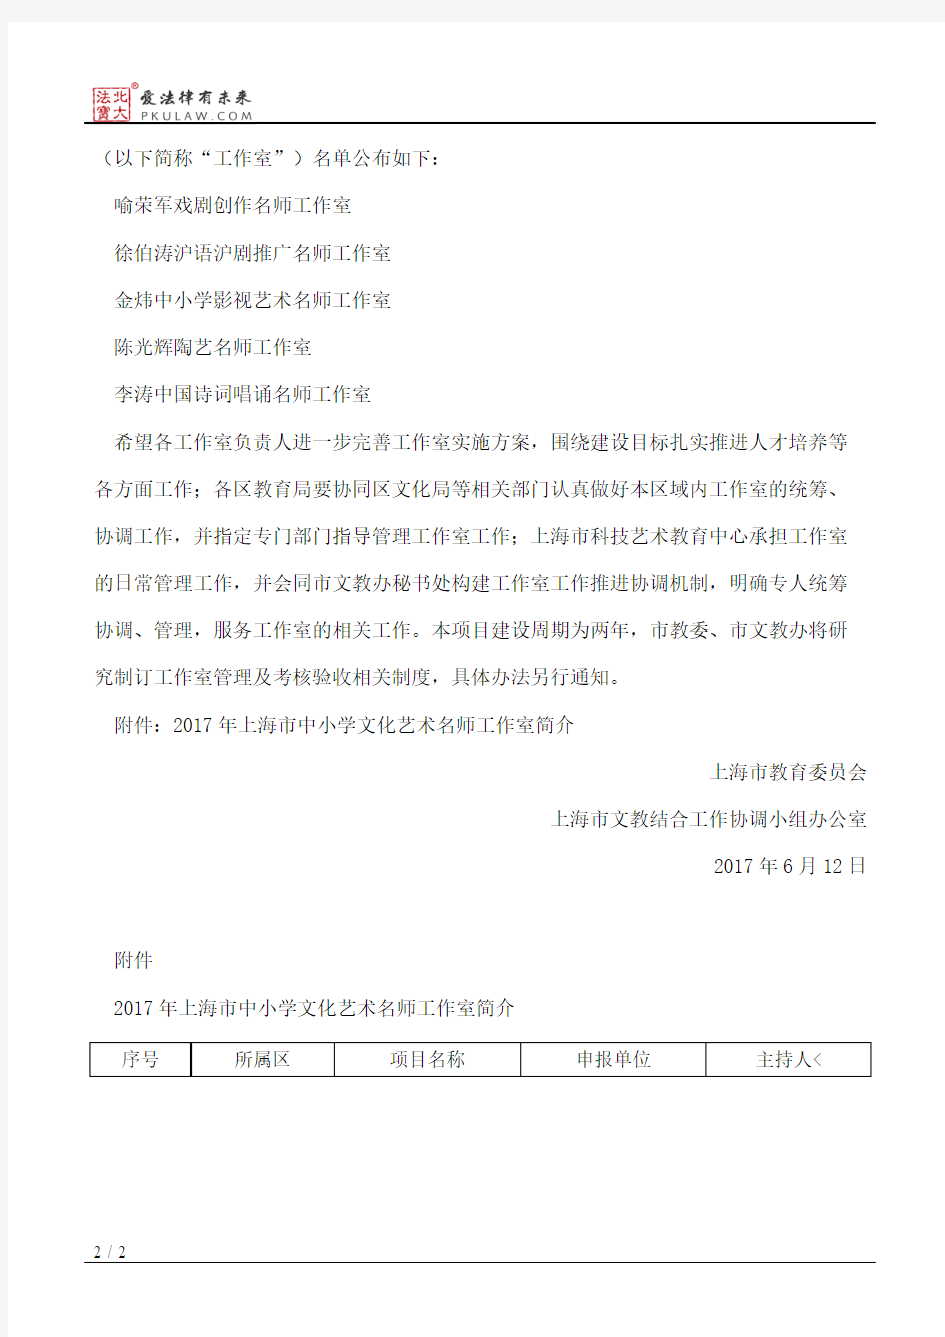 上海市教育委员会、上海市文教结合工作协调小组办公室关于公布201